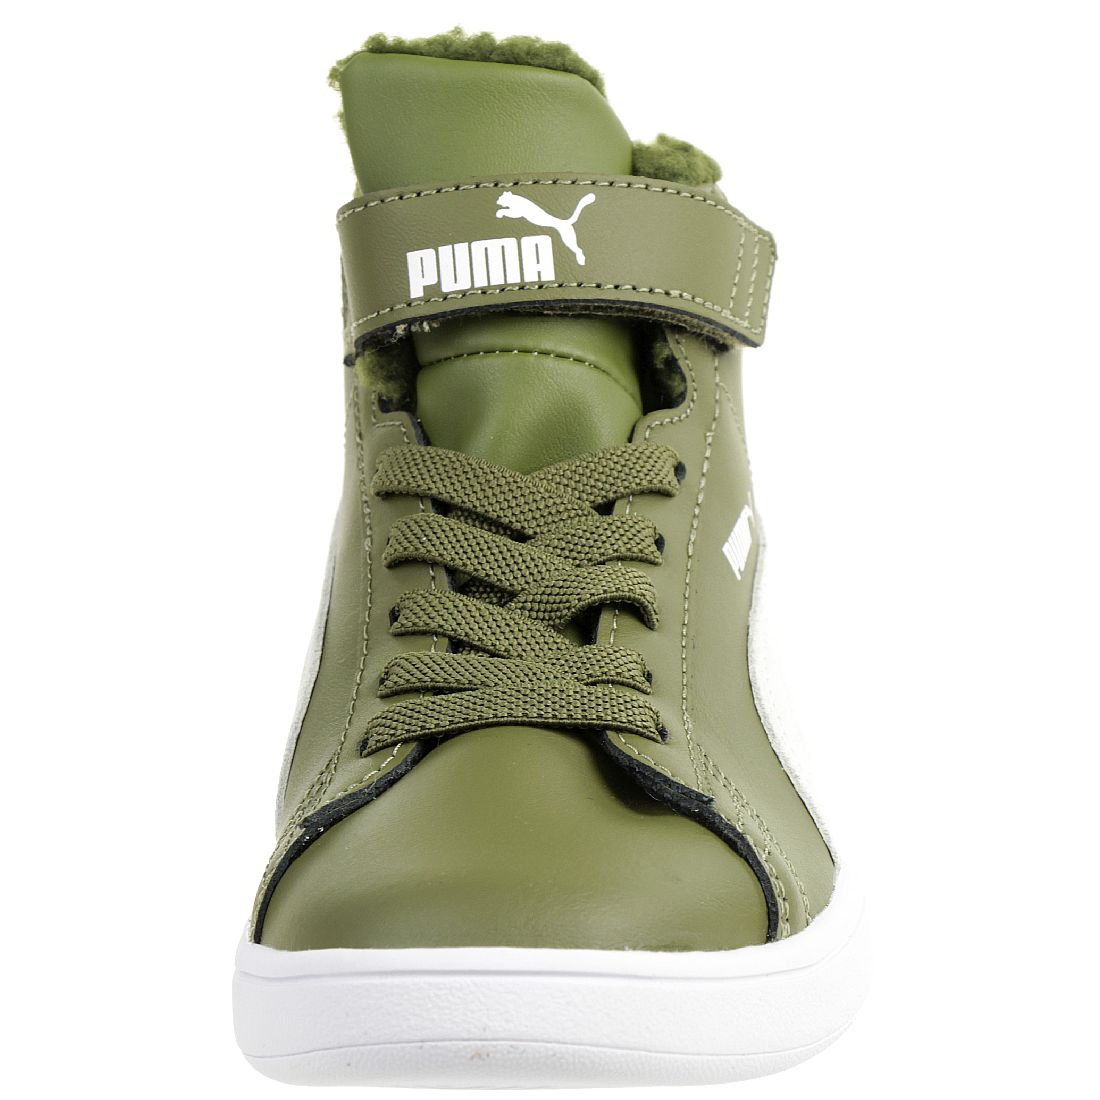 Puma Smash v2 Mid L Fur V PS Winterstiefel Boots Kinder Sneaker warm gefüttert Olive